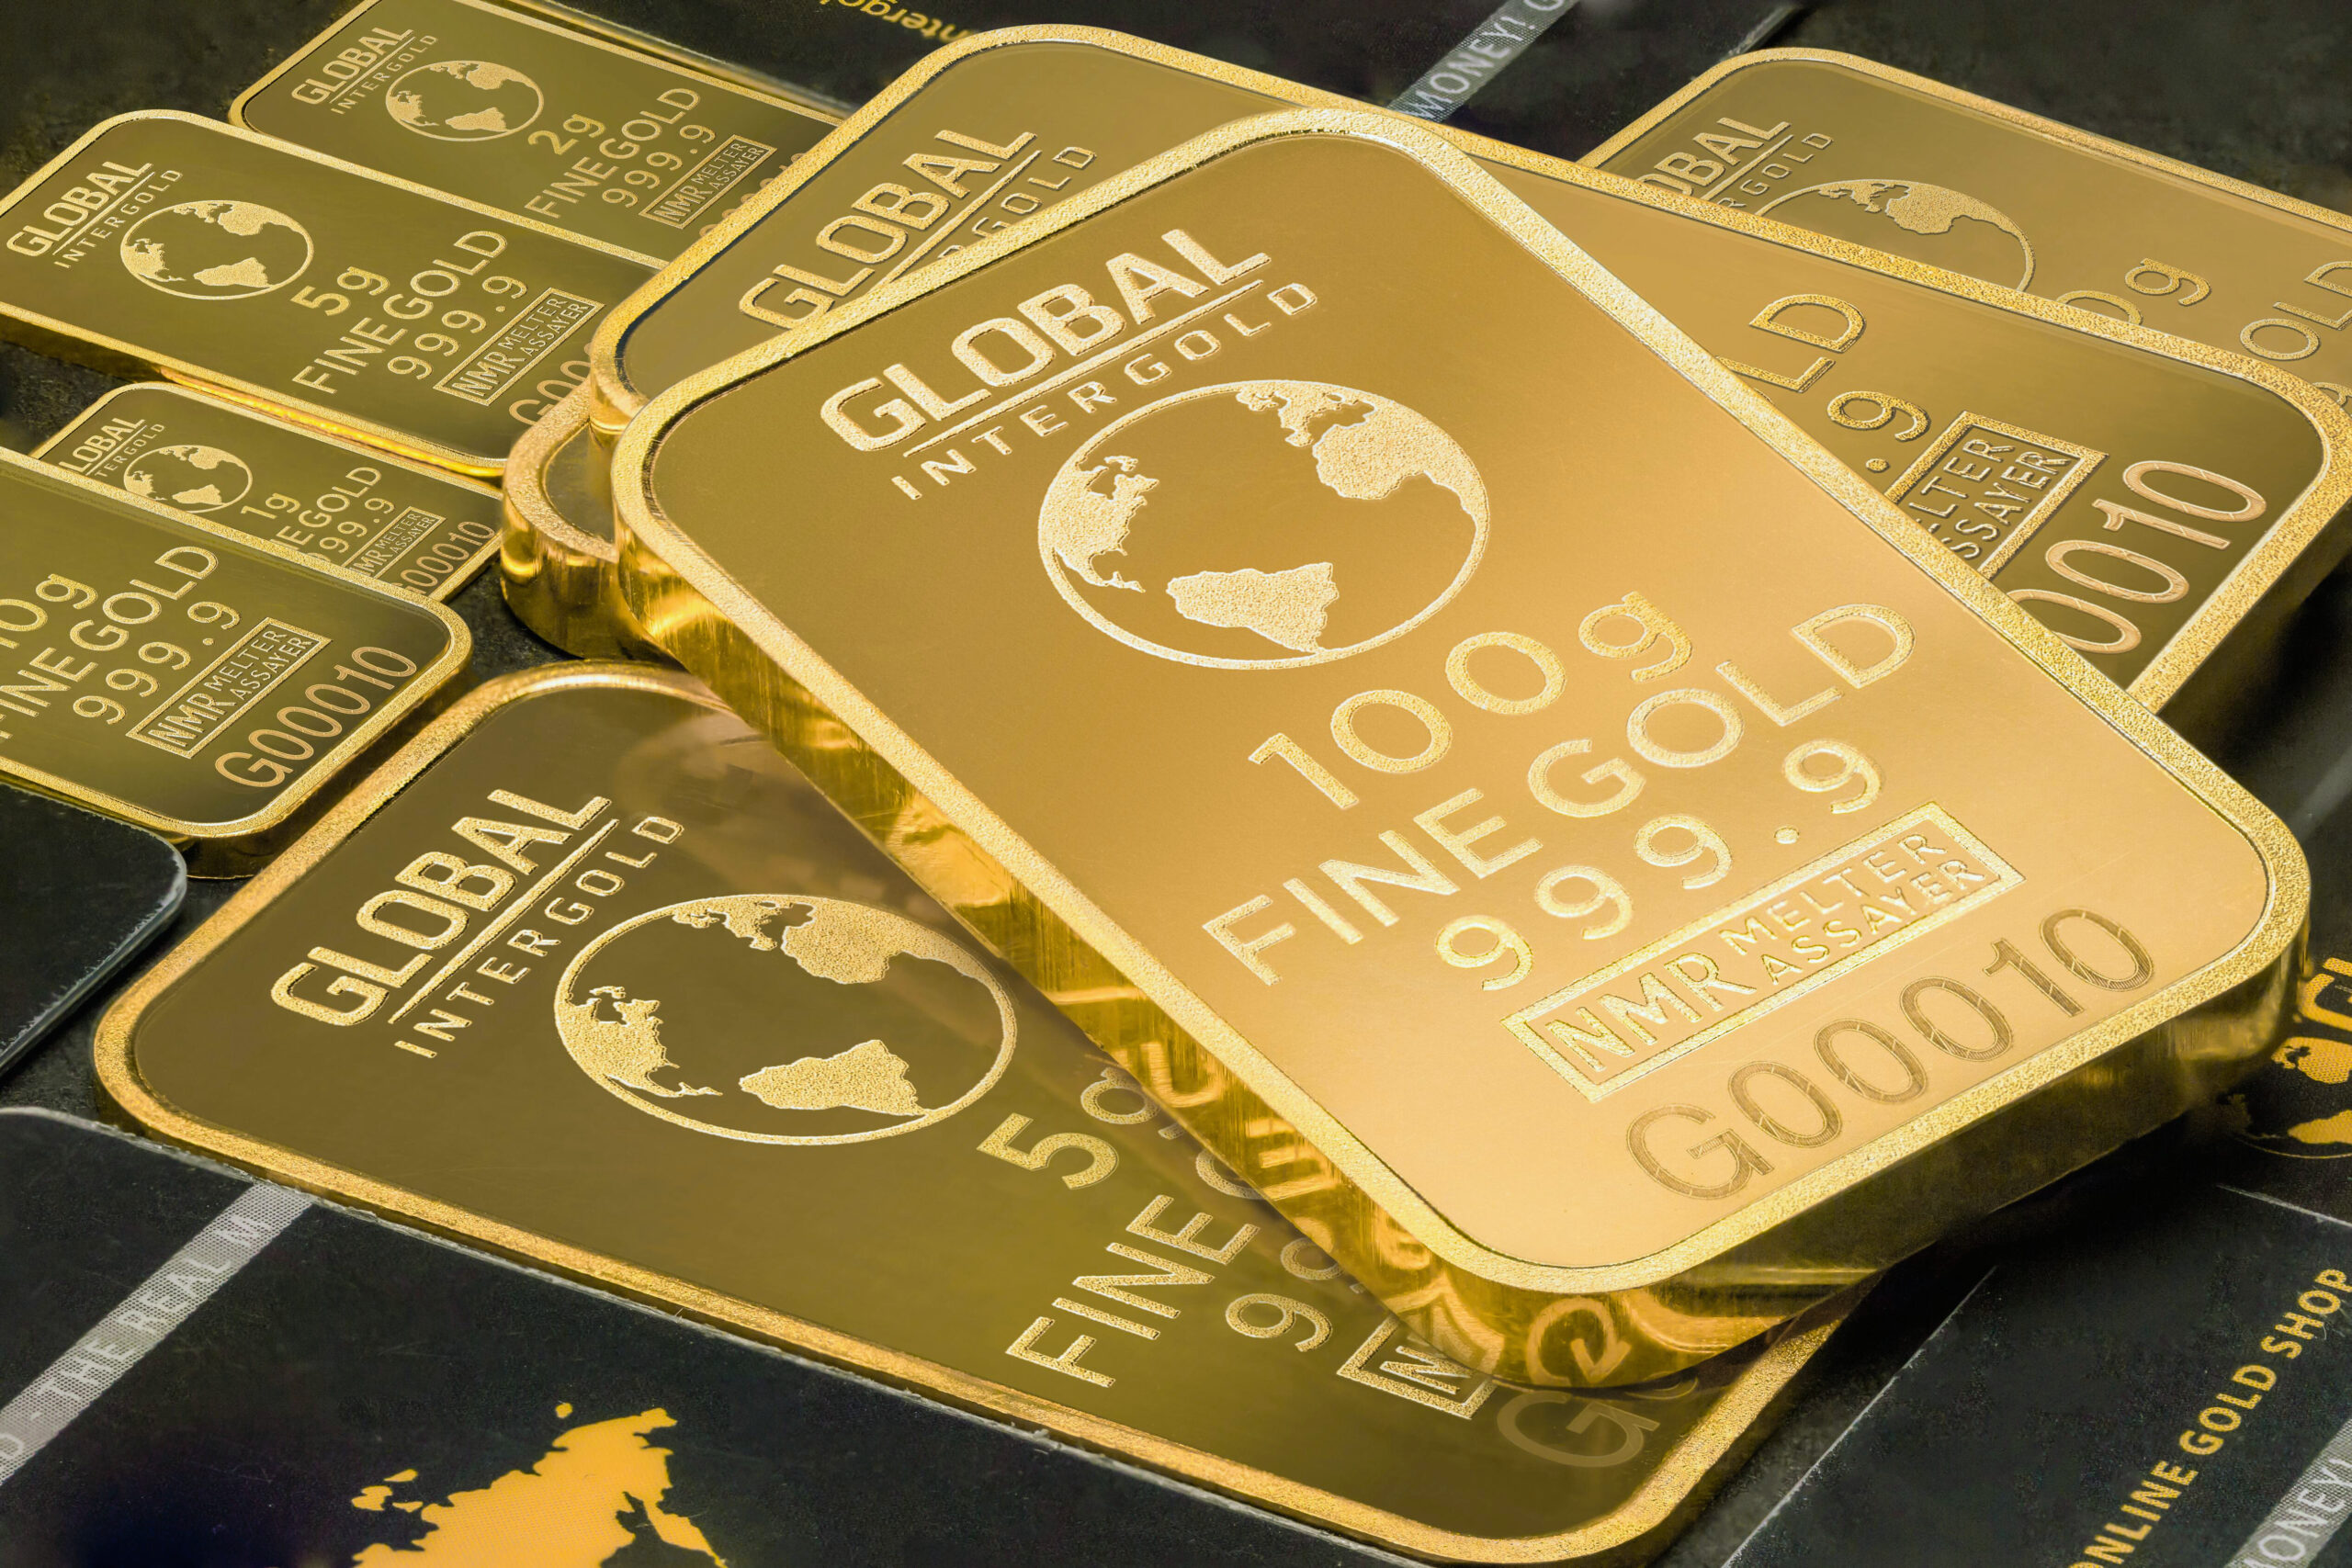 How to Invest in Gold | David Rosenberg bullish on Gold $3000